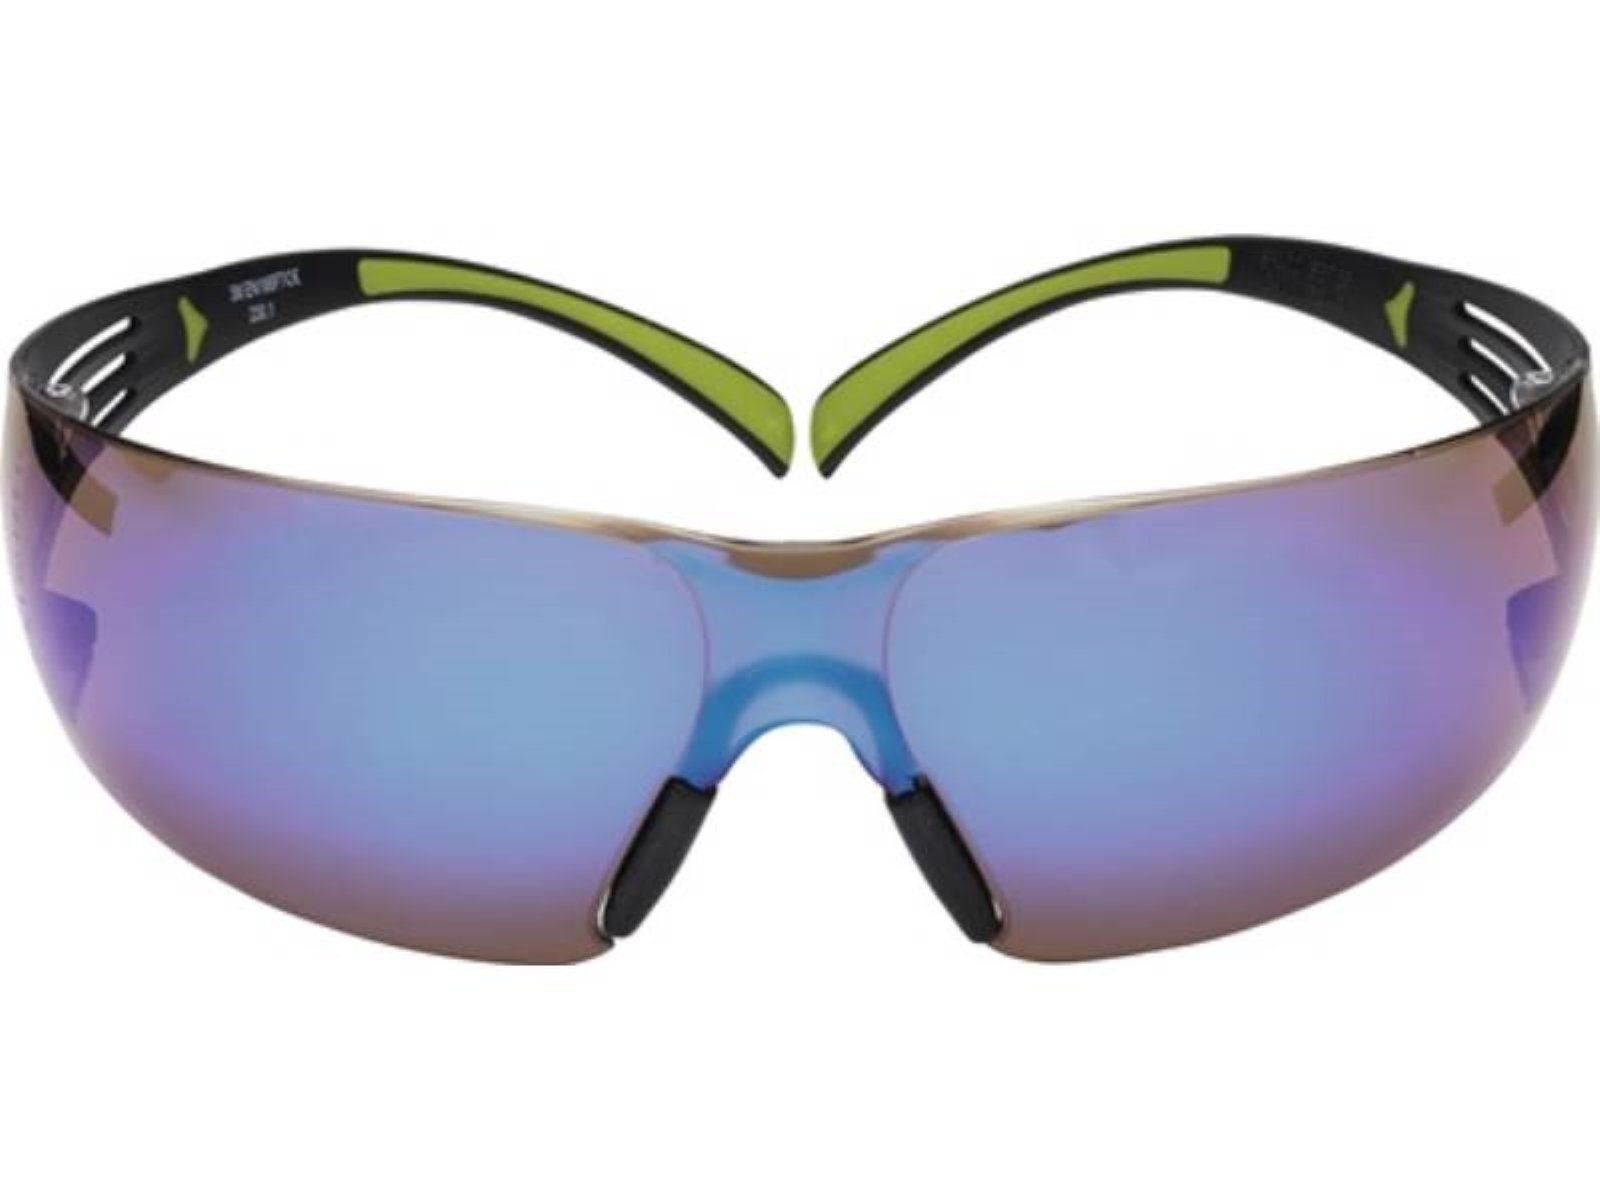 3M Arbeitsschutzbrille Schutzbrille SecureFit-SF400 EN 166,EN 172 Bügel schwarz grün,Scheib